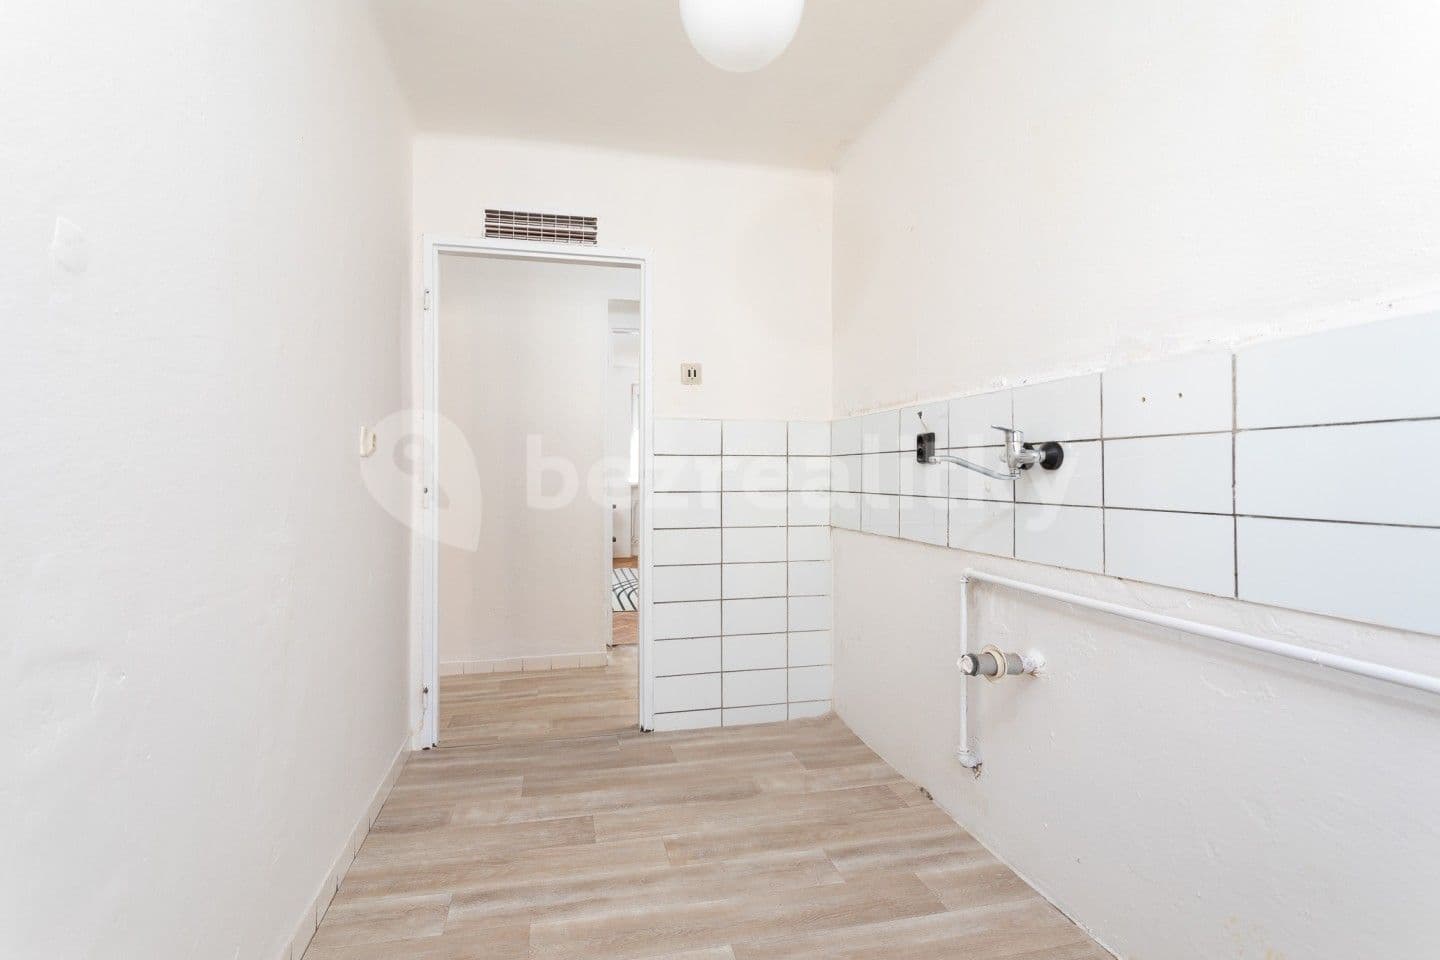 3 bedroom flat for sale, 57 m², Tolstého, Frýdek-Místek, Moravskoslezský Region